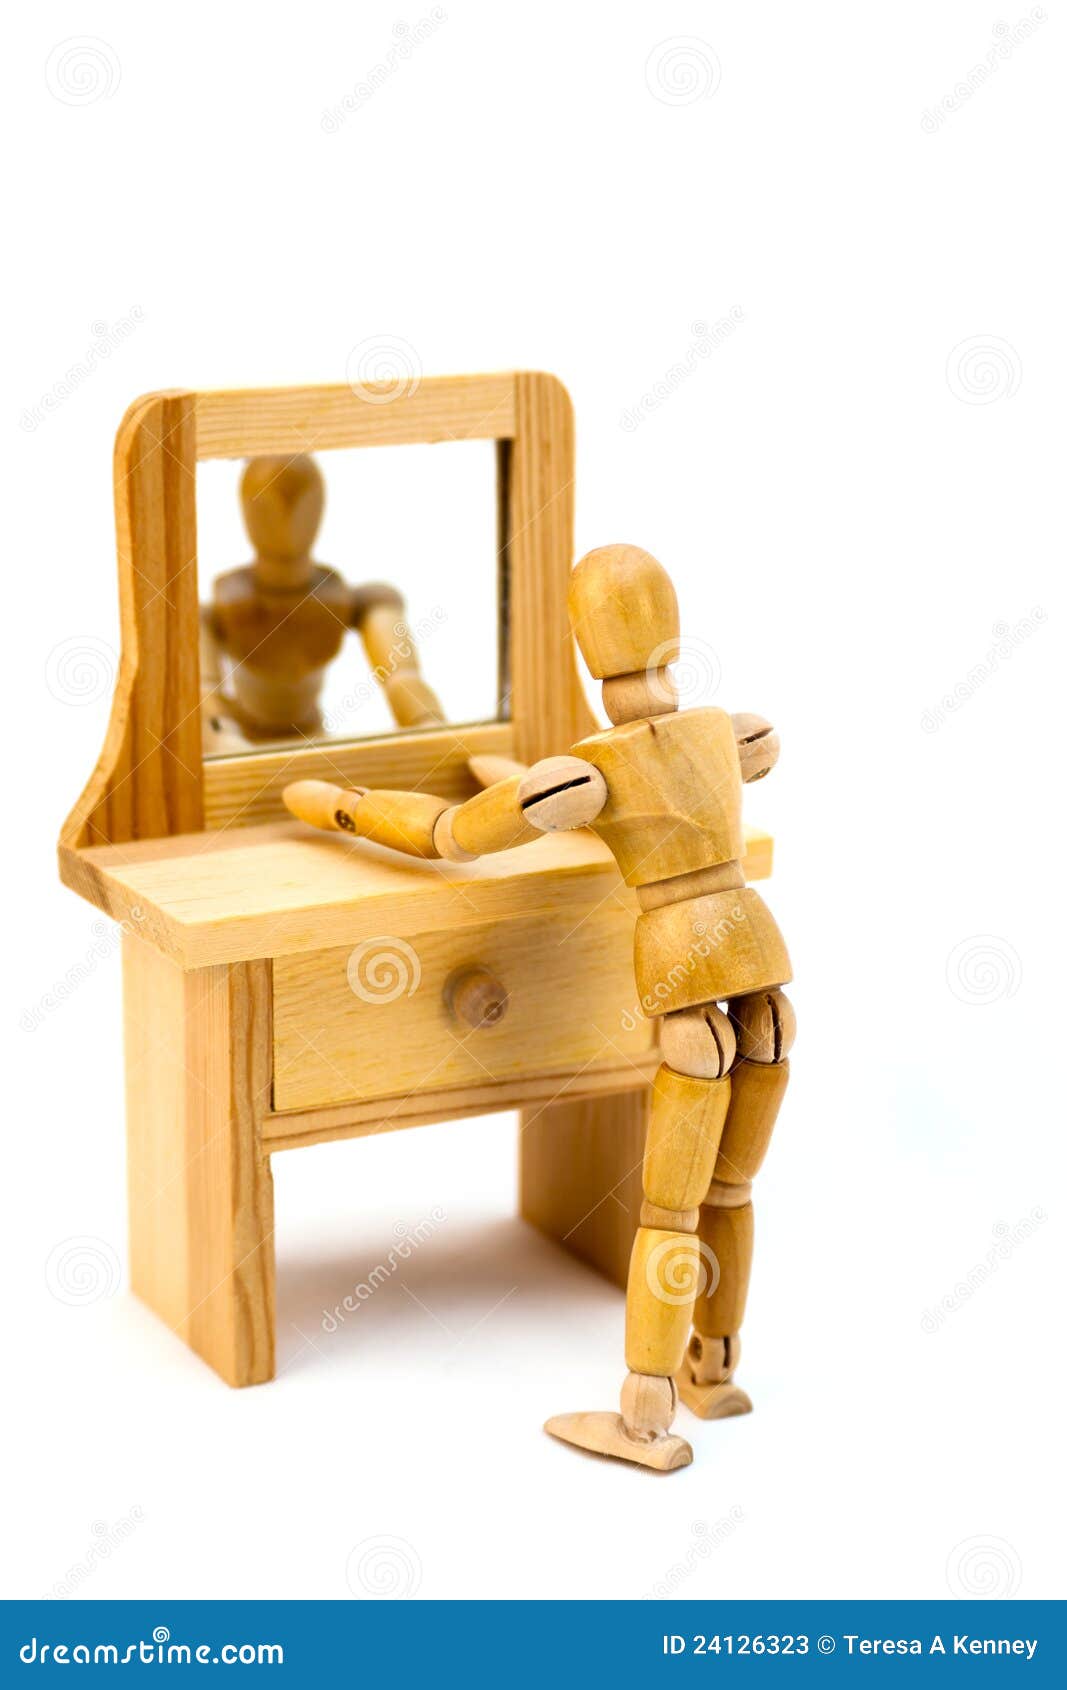 mannequin in vanity mirror